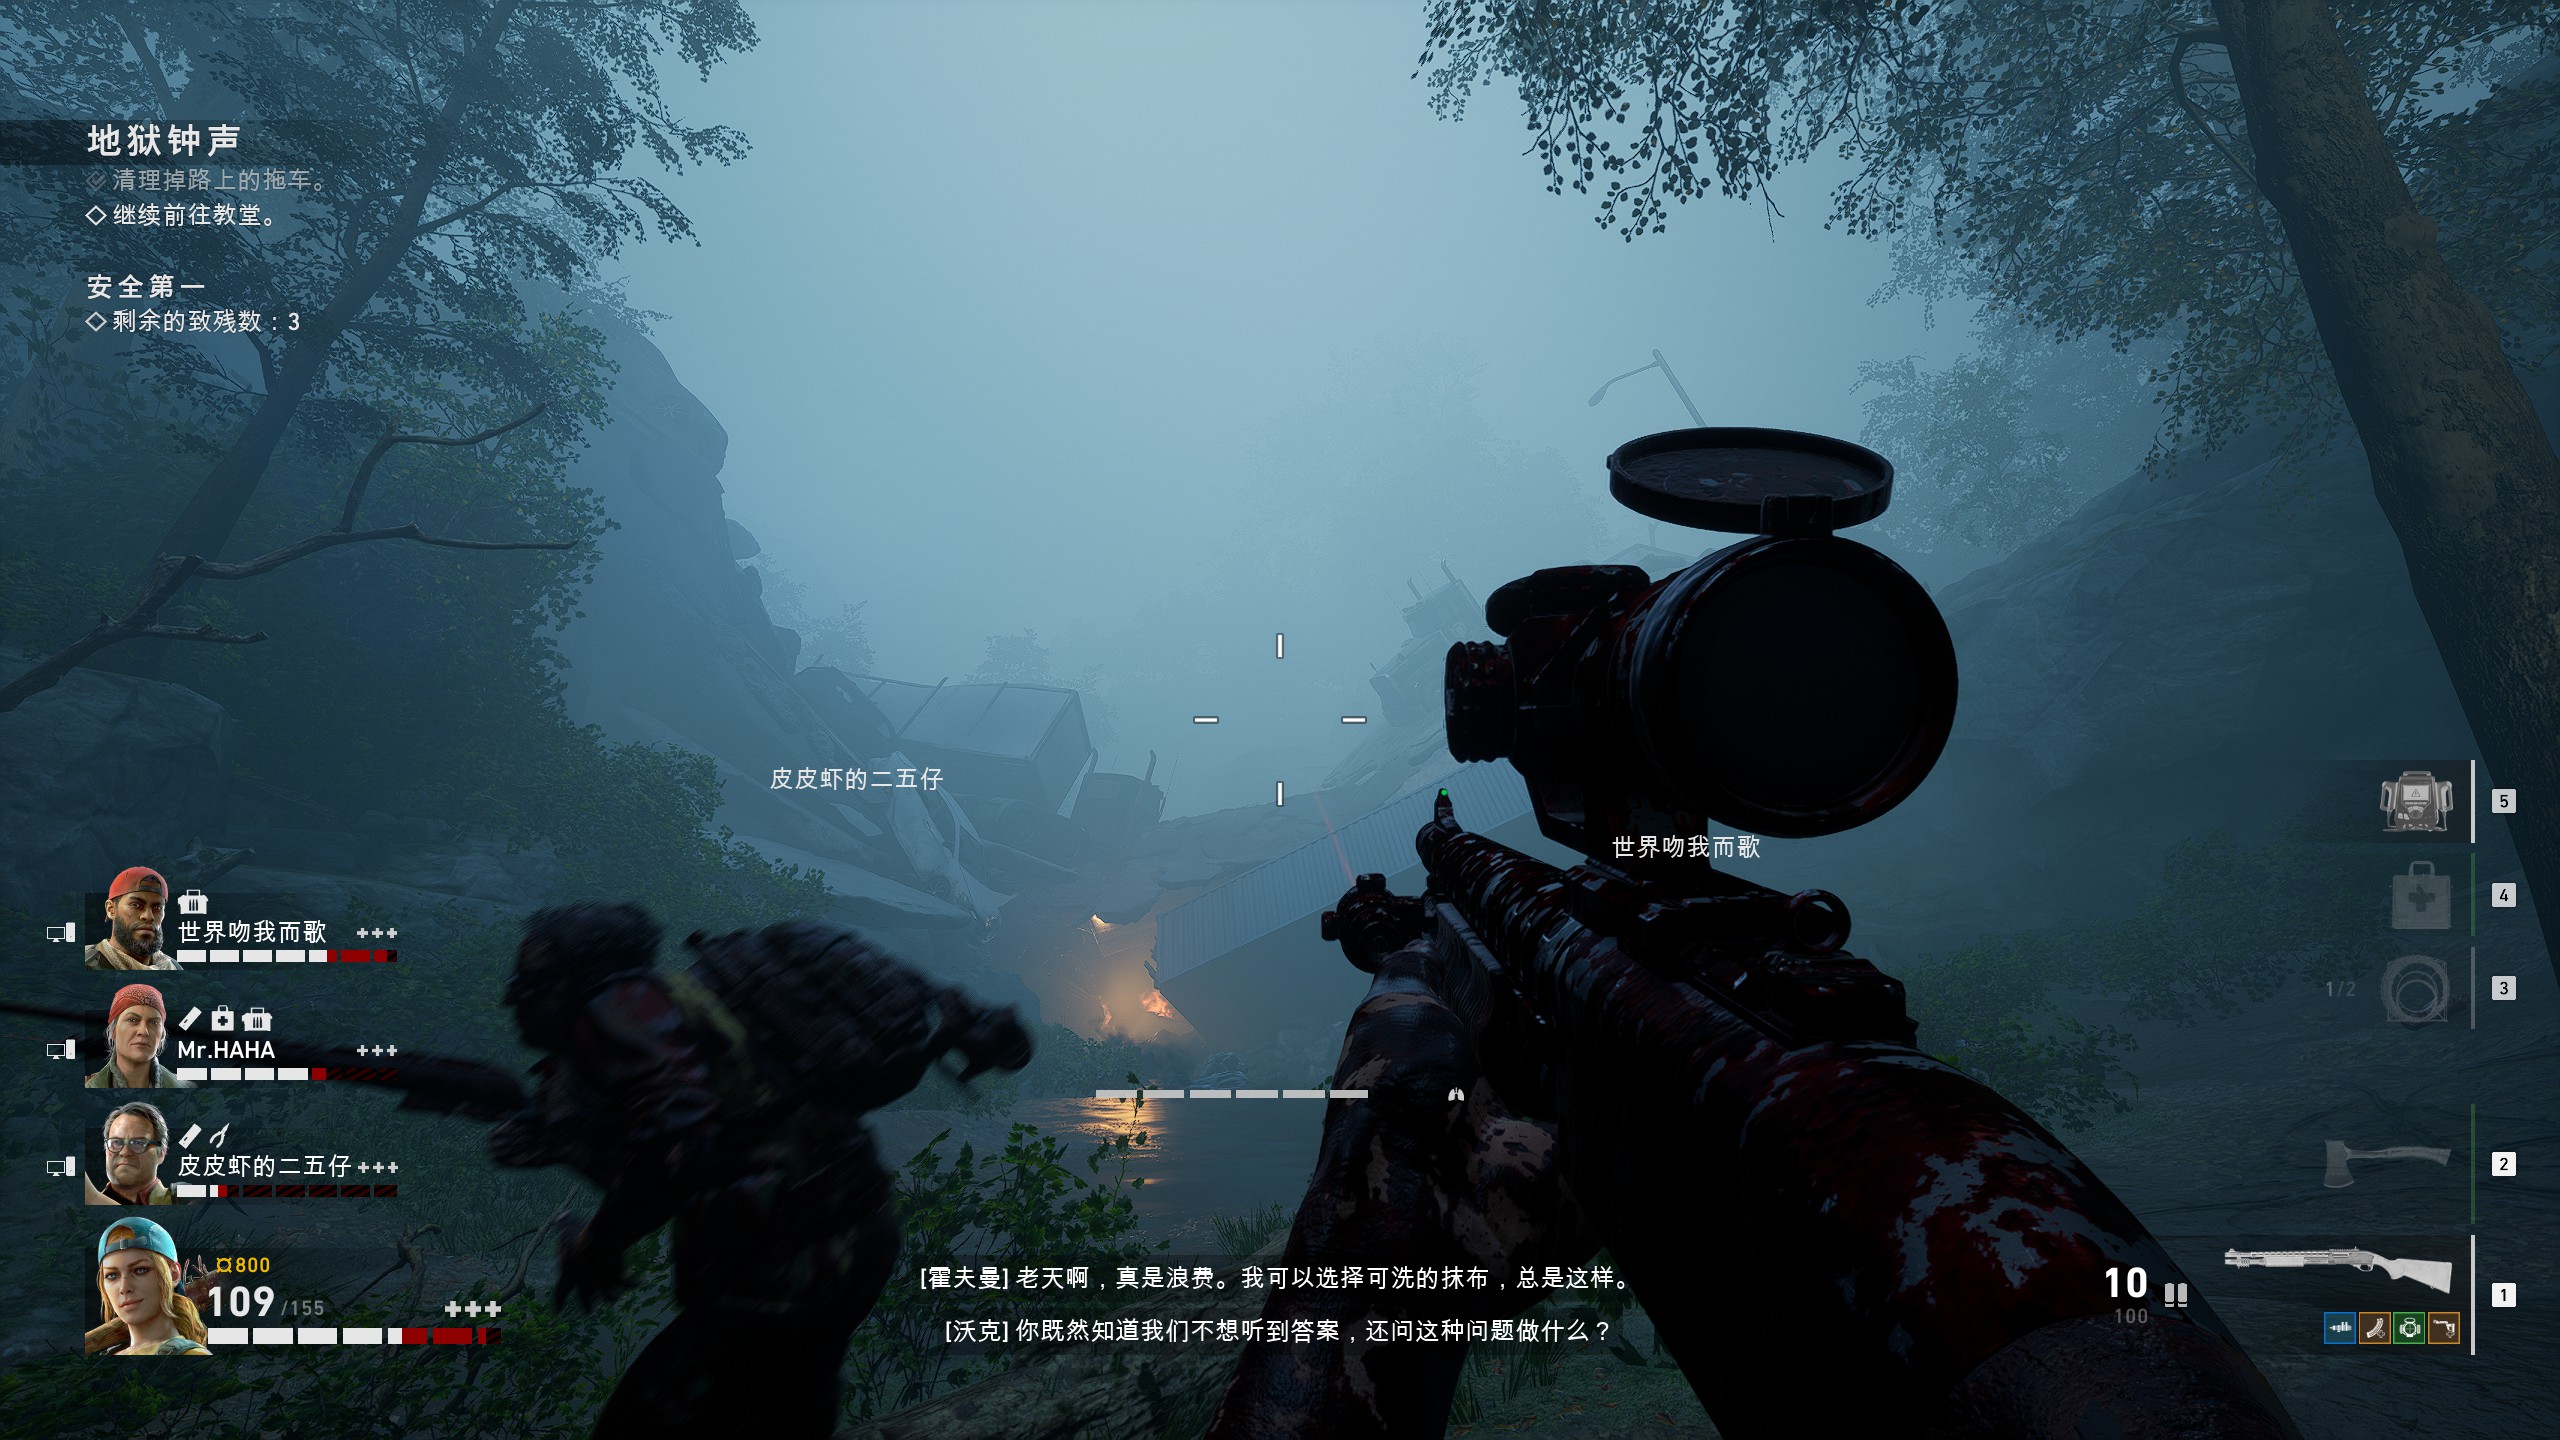 血复仇游戏狙击卡组的使用和搭配策略